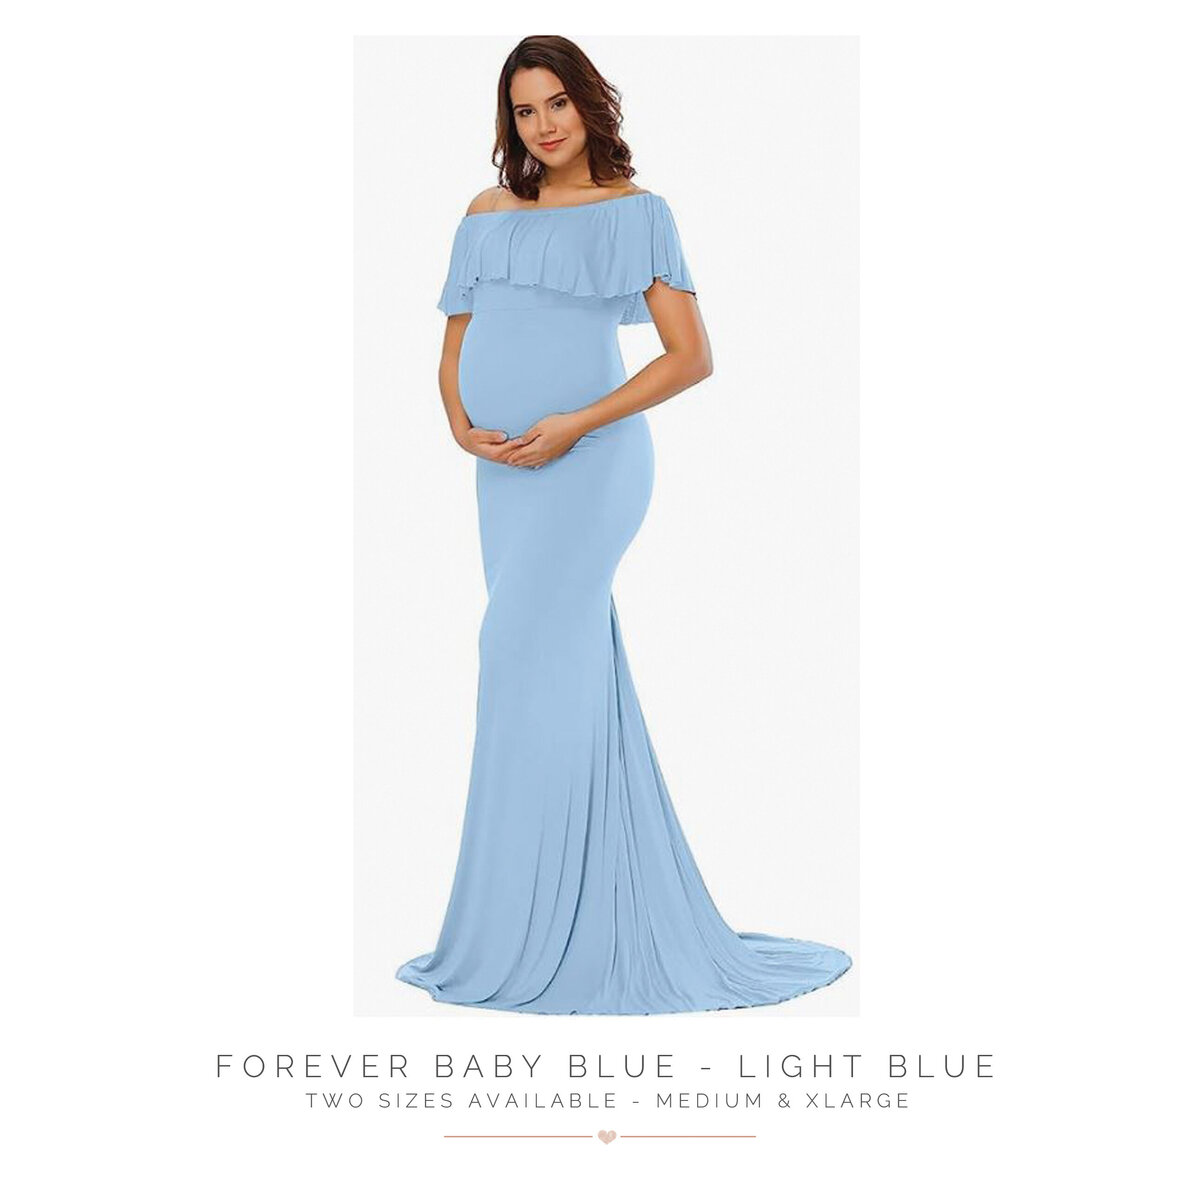 Forever Baby Blue - Light Blue